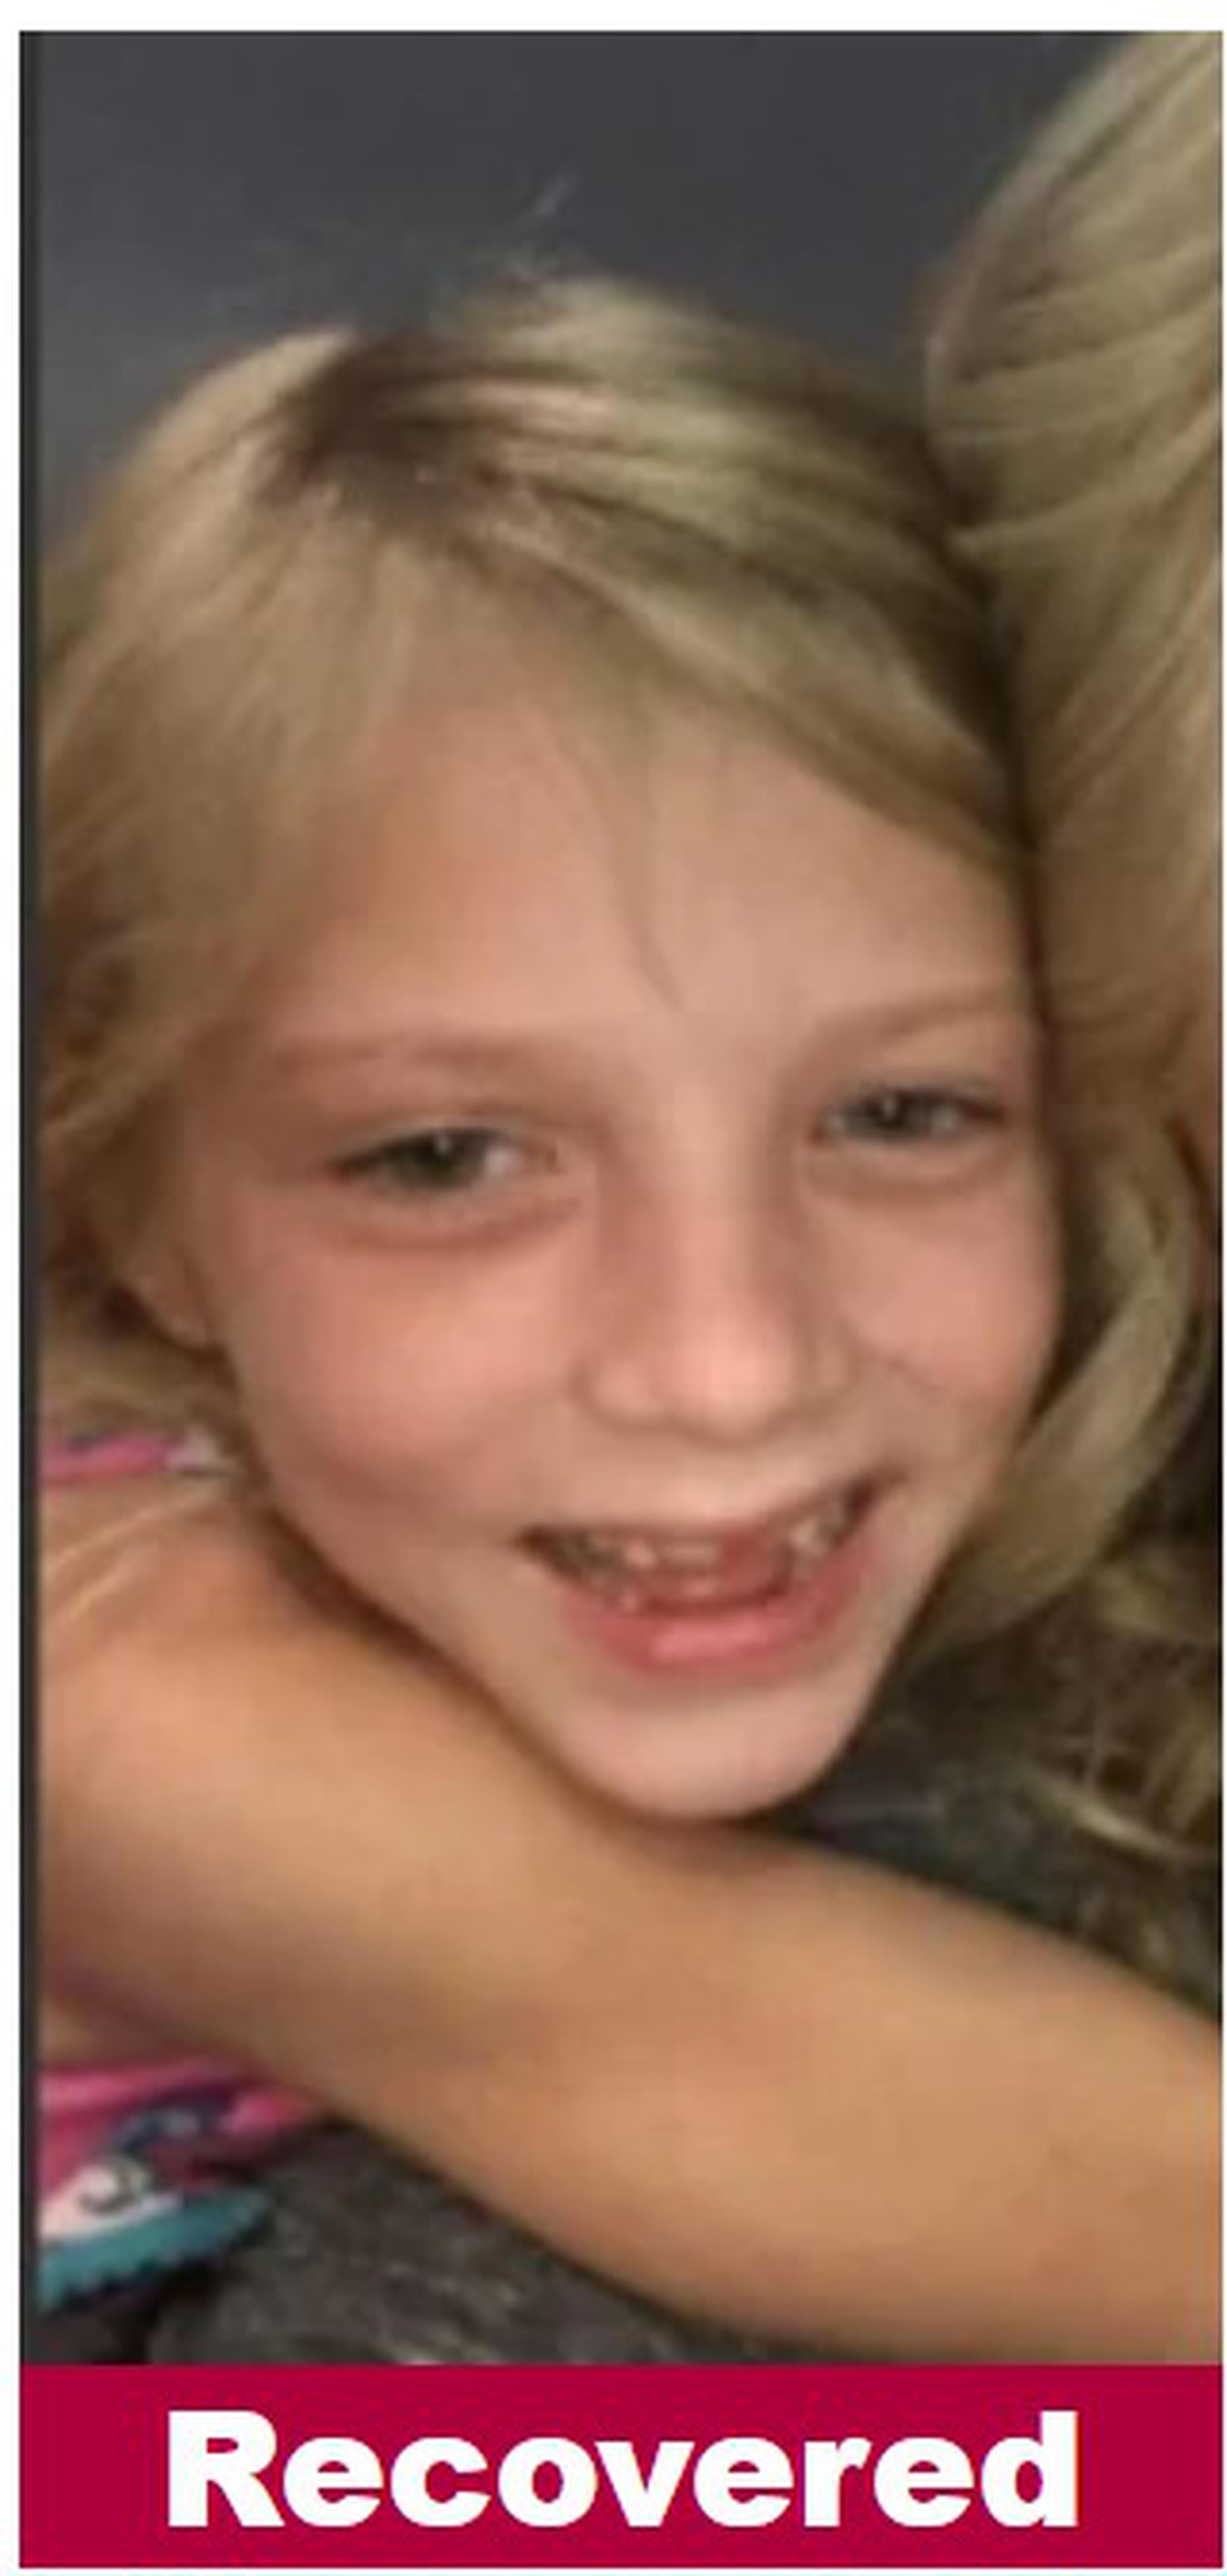 La niña Stella Brannen Salter, que era buscada por las autoridades del estado de Georgia tras ser reportada desaparecida, fue hallada anoche en Puerto Rico.